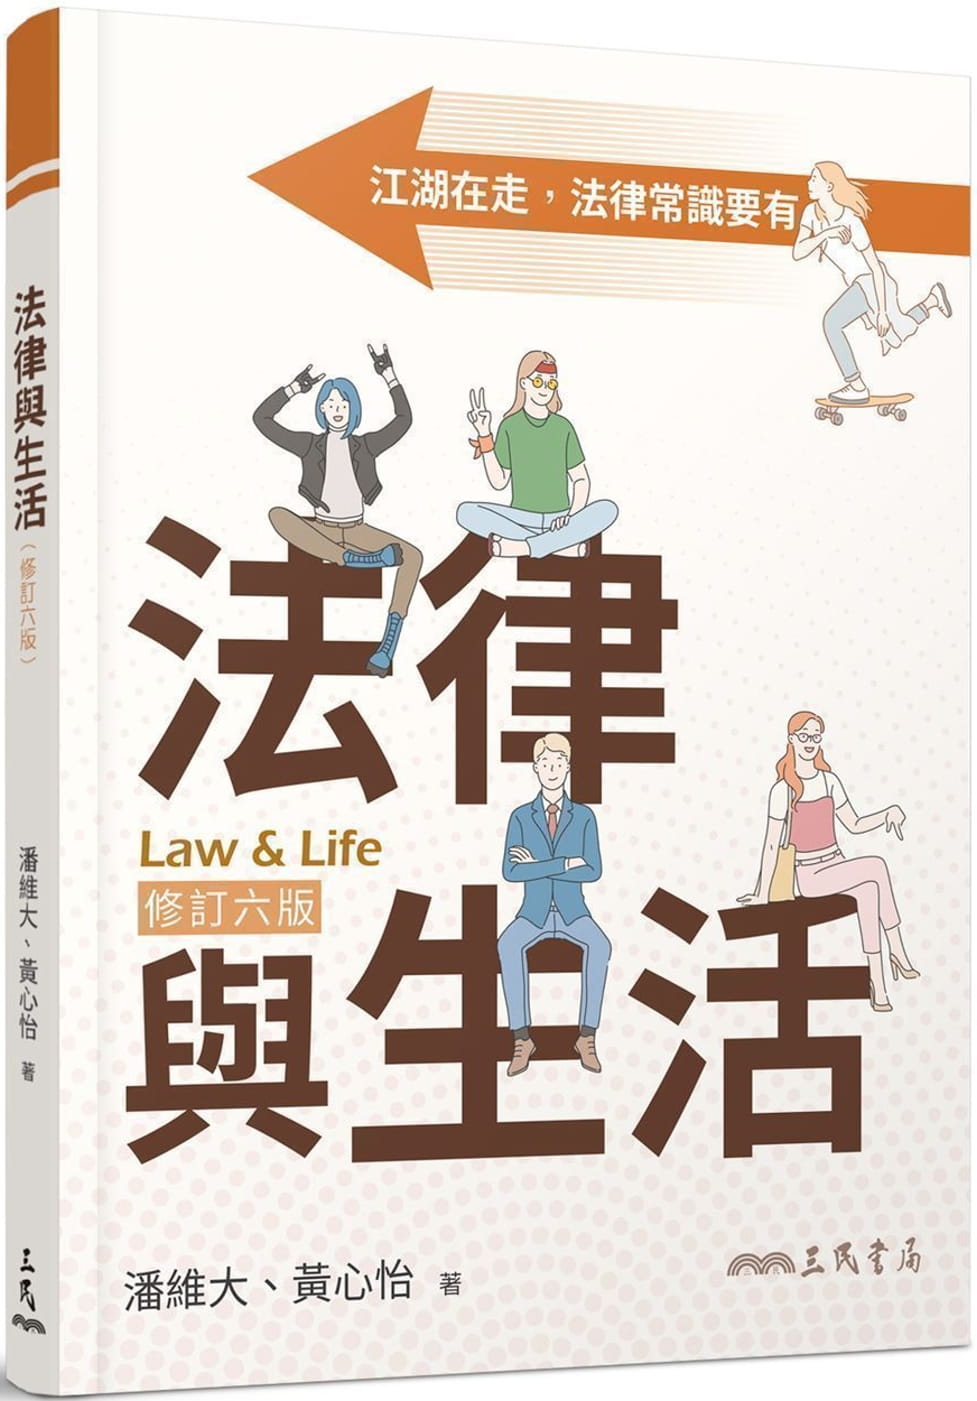 法律與生活(修訂六版)